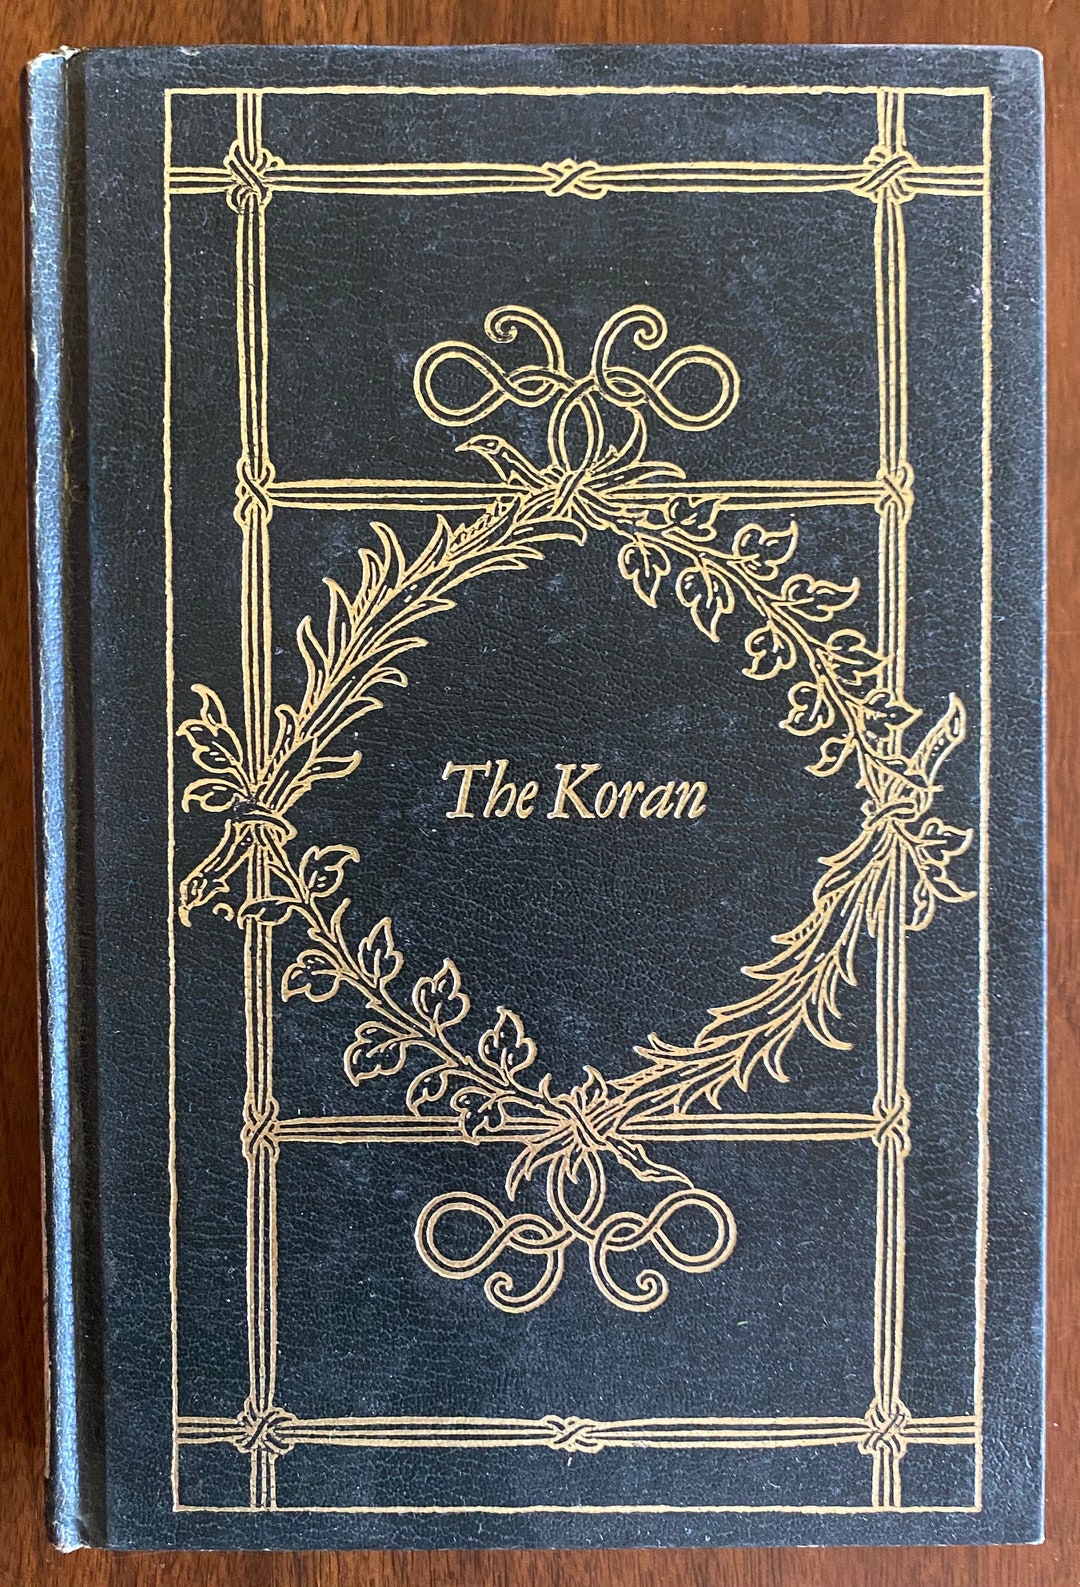 Book　Vintage　Back　Hard　Etsy　The　Koran